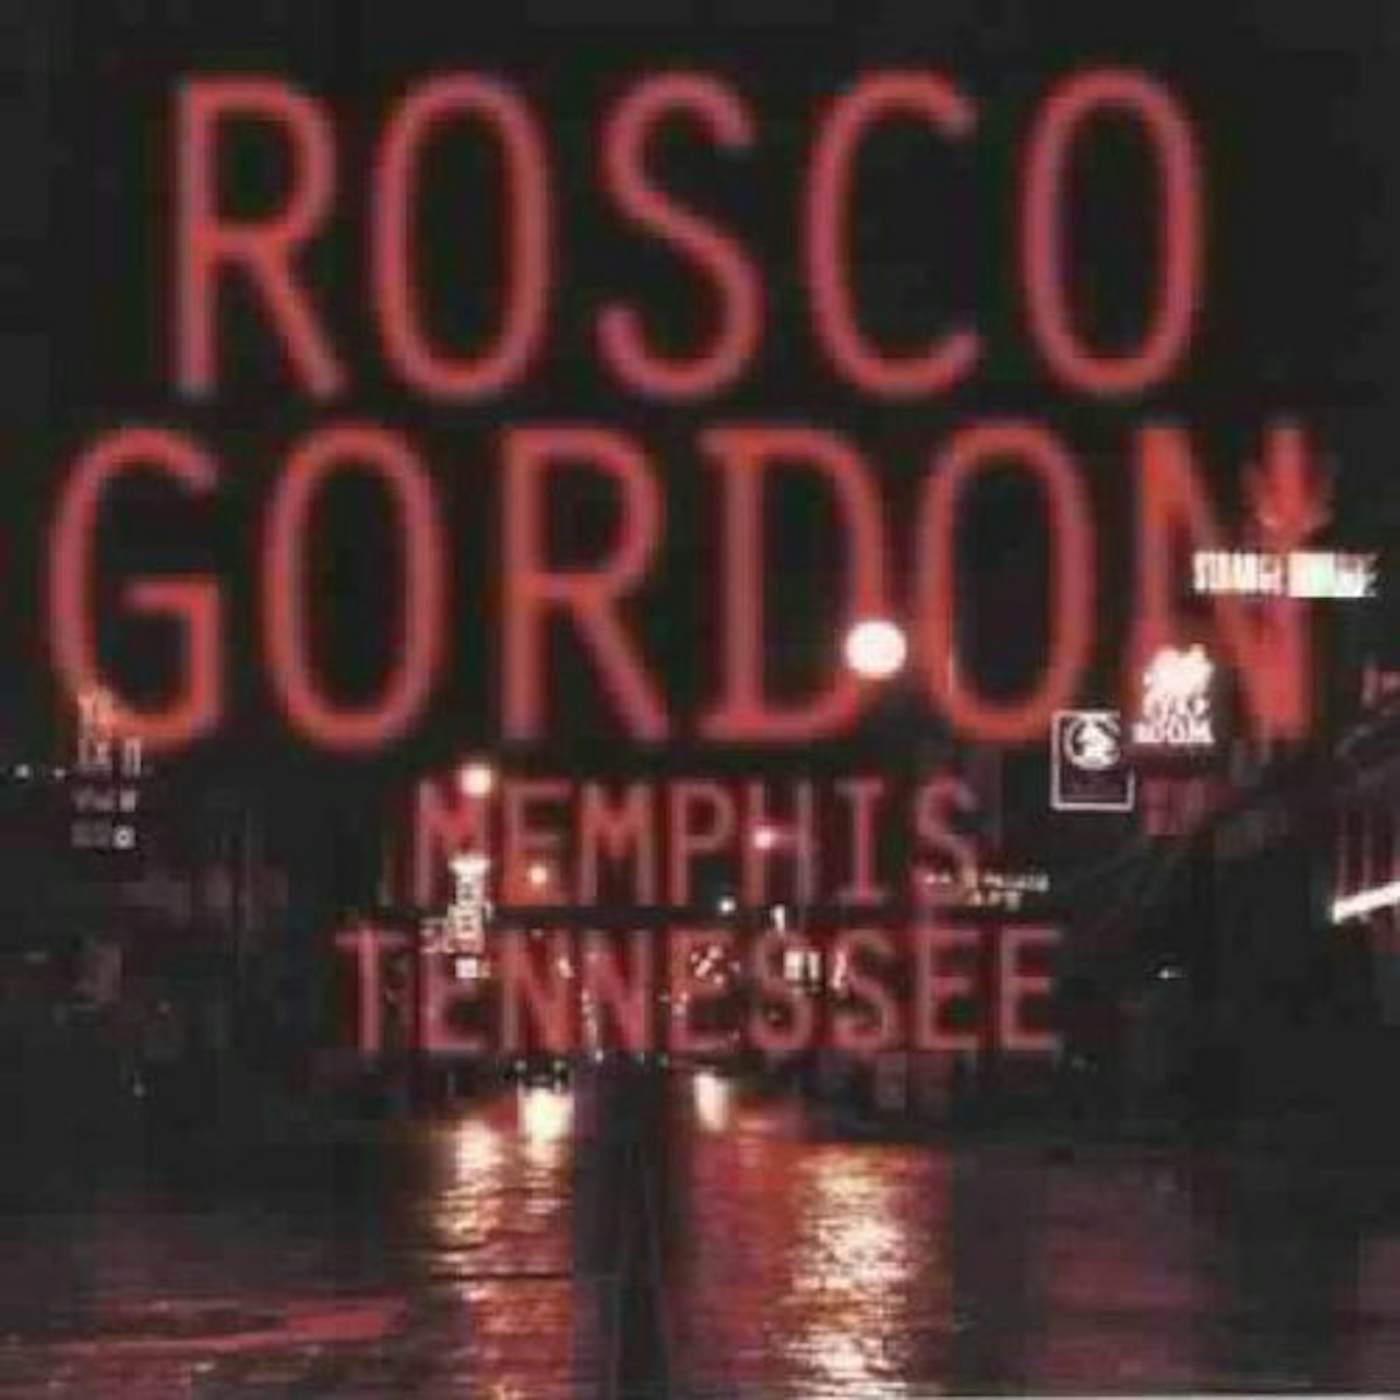 Rosco Gordon MEMPHIS TENNESSEE CD